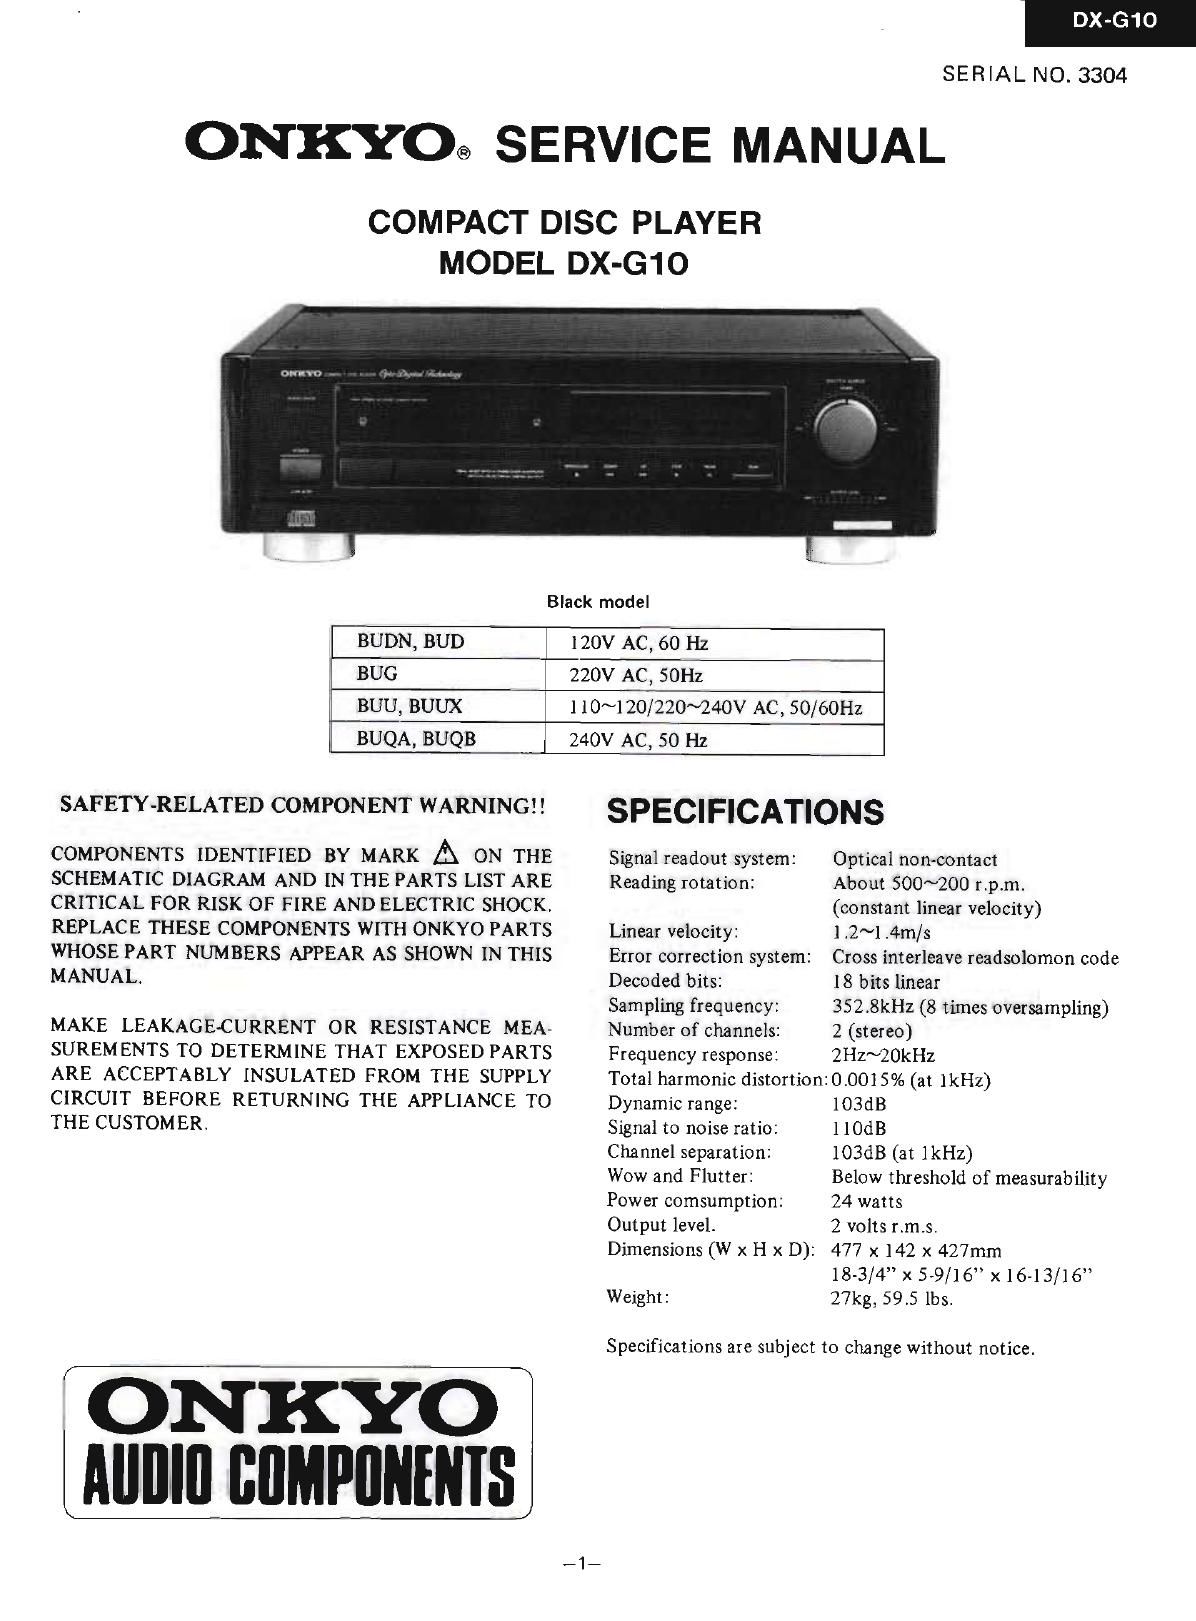 Onkyo DXG 10 Service Manual